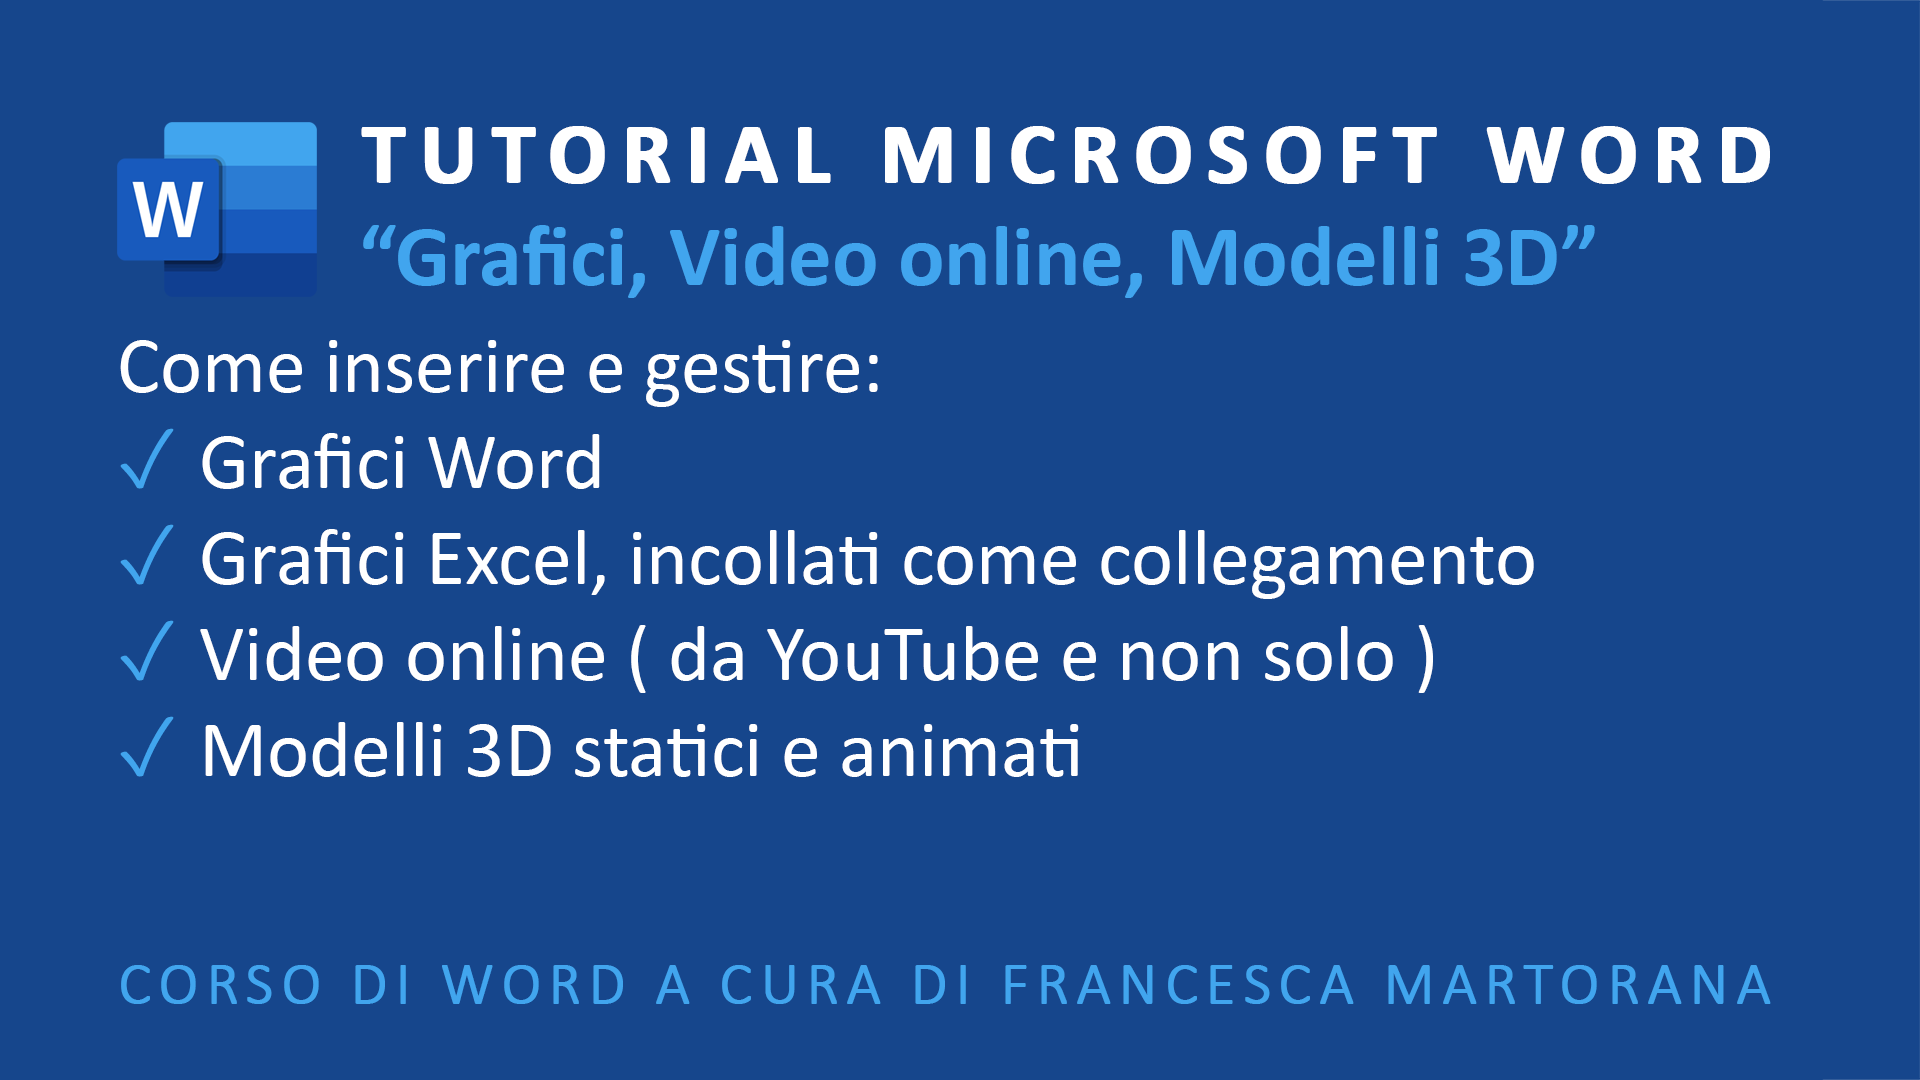 Microsoft Word tutorial italiano grafici video modelli 3d